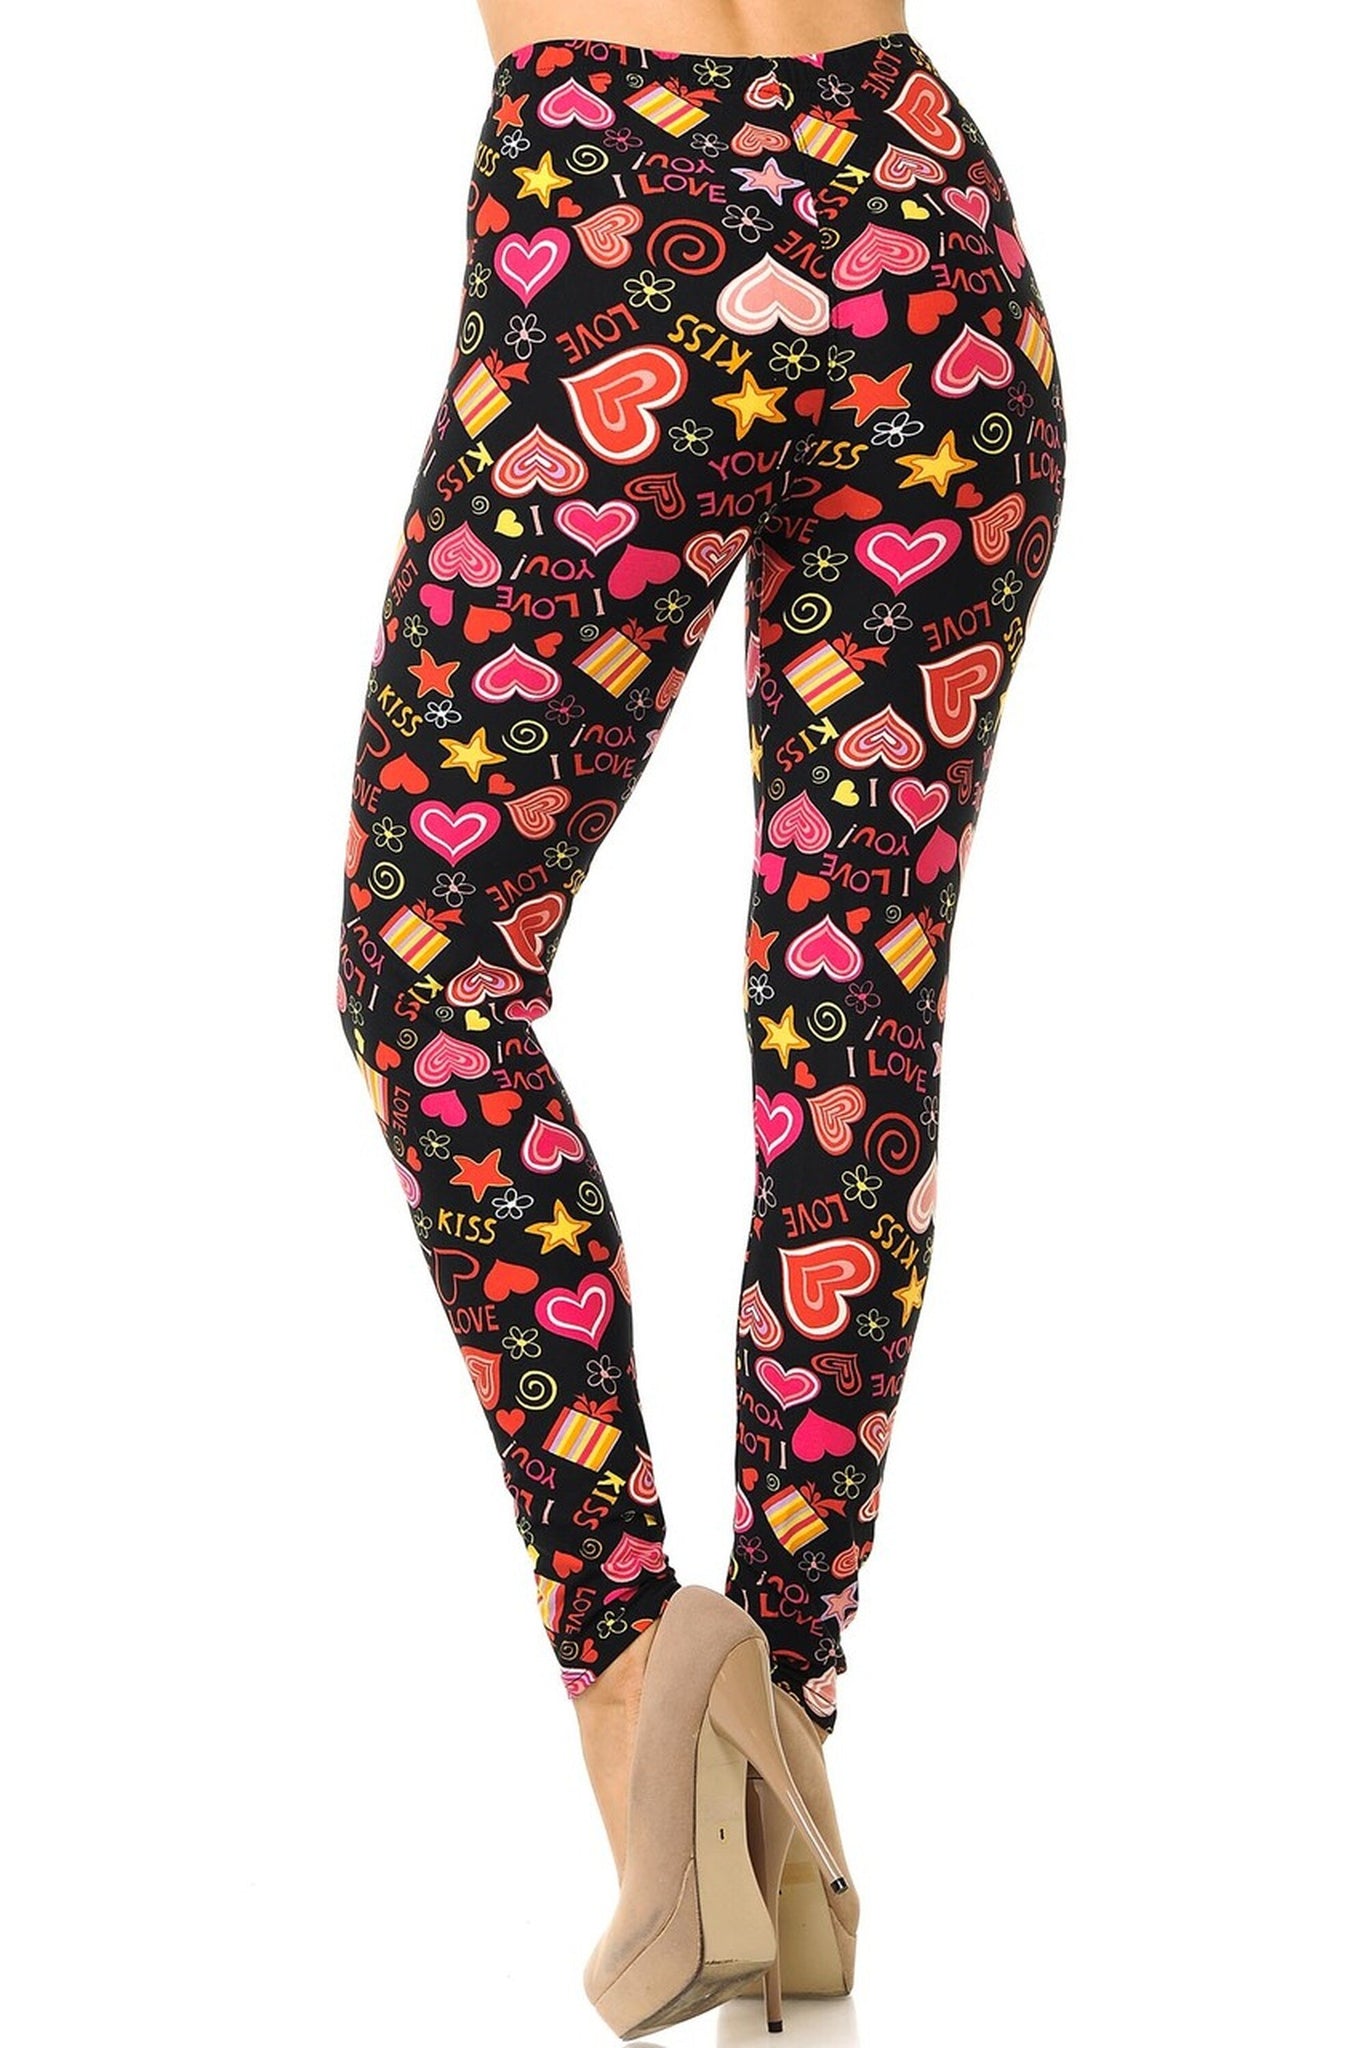 Symbols of Love Curvy Plus Size Valentine's Day Leggings – Polly's Premium  Leggings